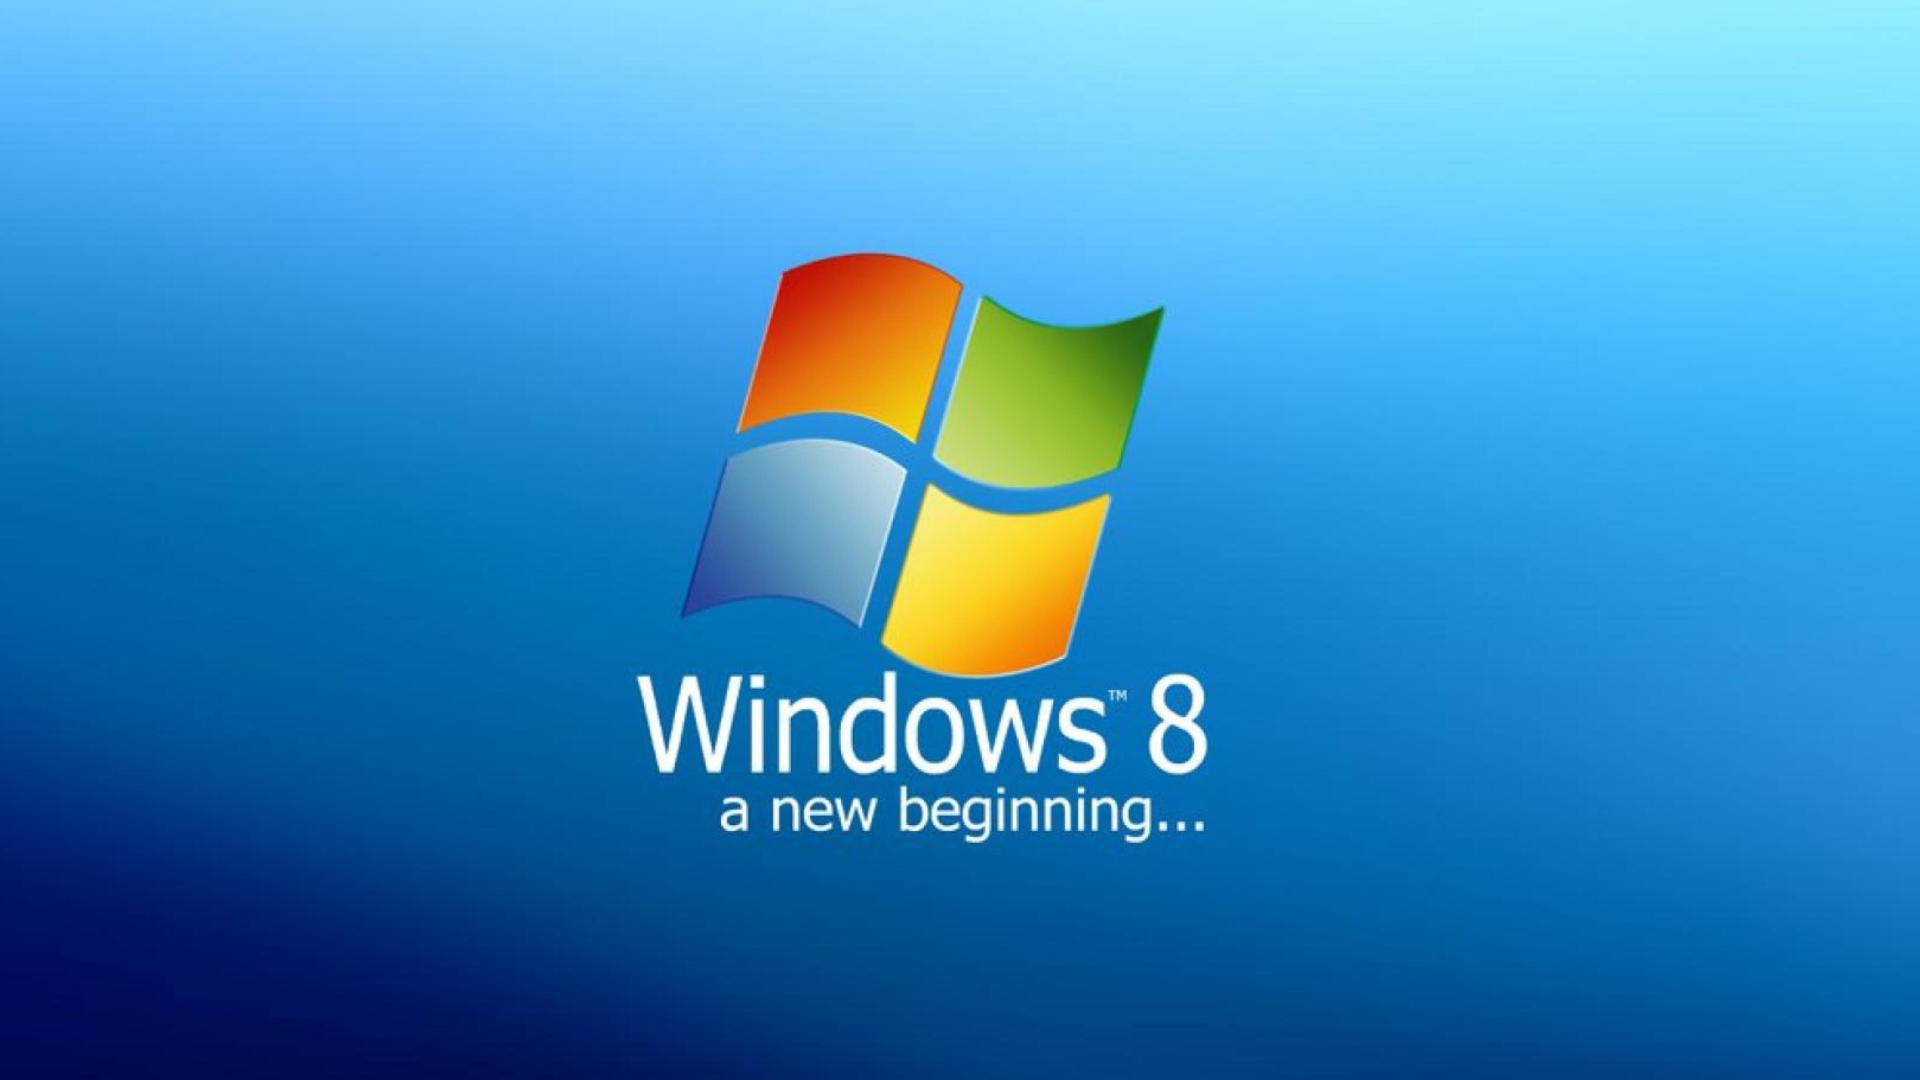 A New Beginning Windows 8 screenshot #1 1920x1080